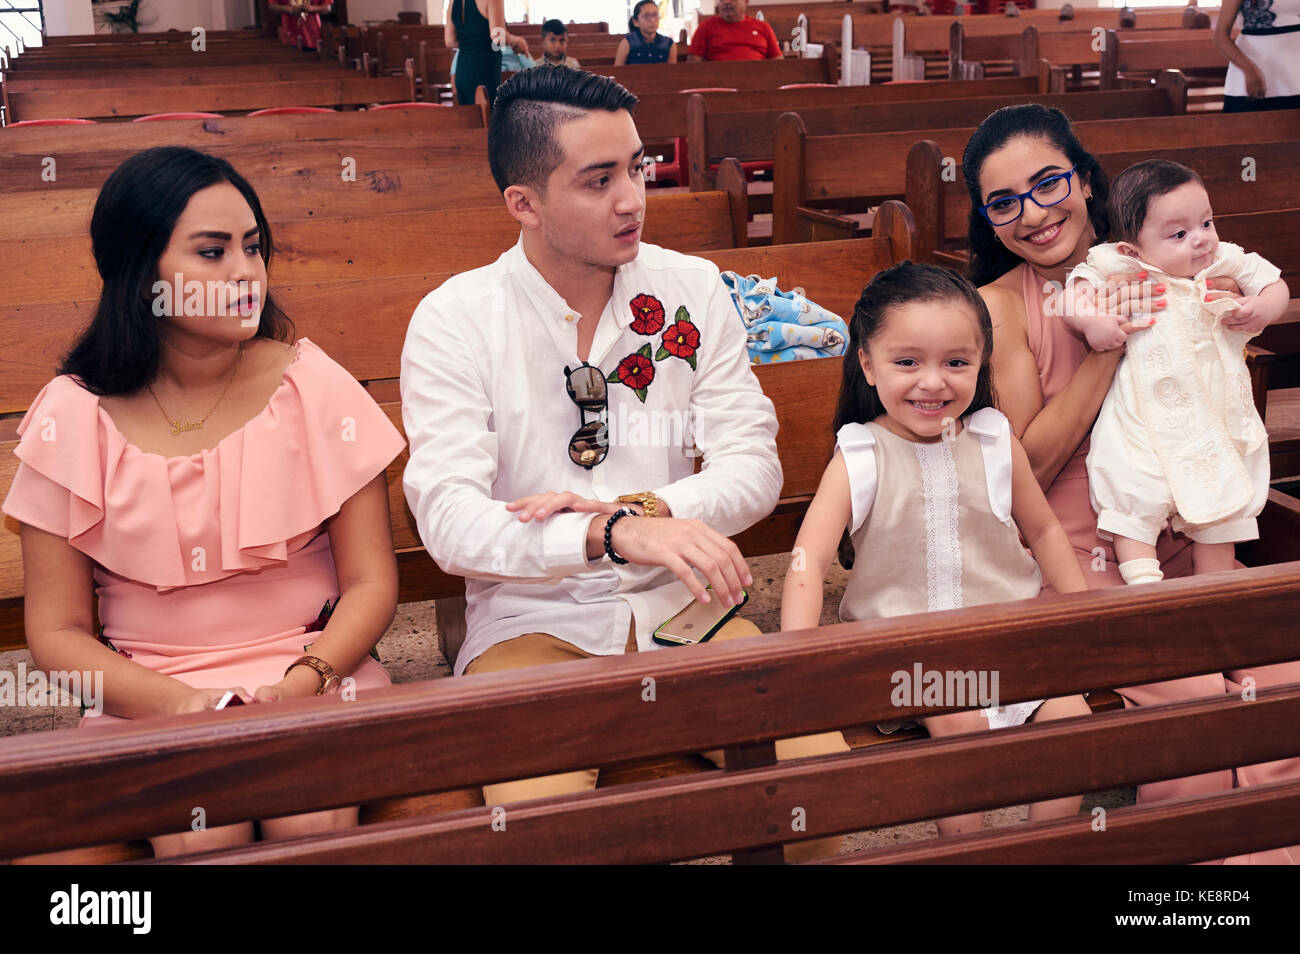 Baby baptism catholic church ceremony Stock Photo